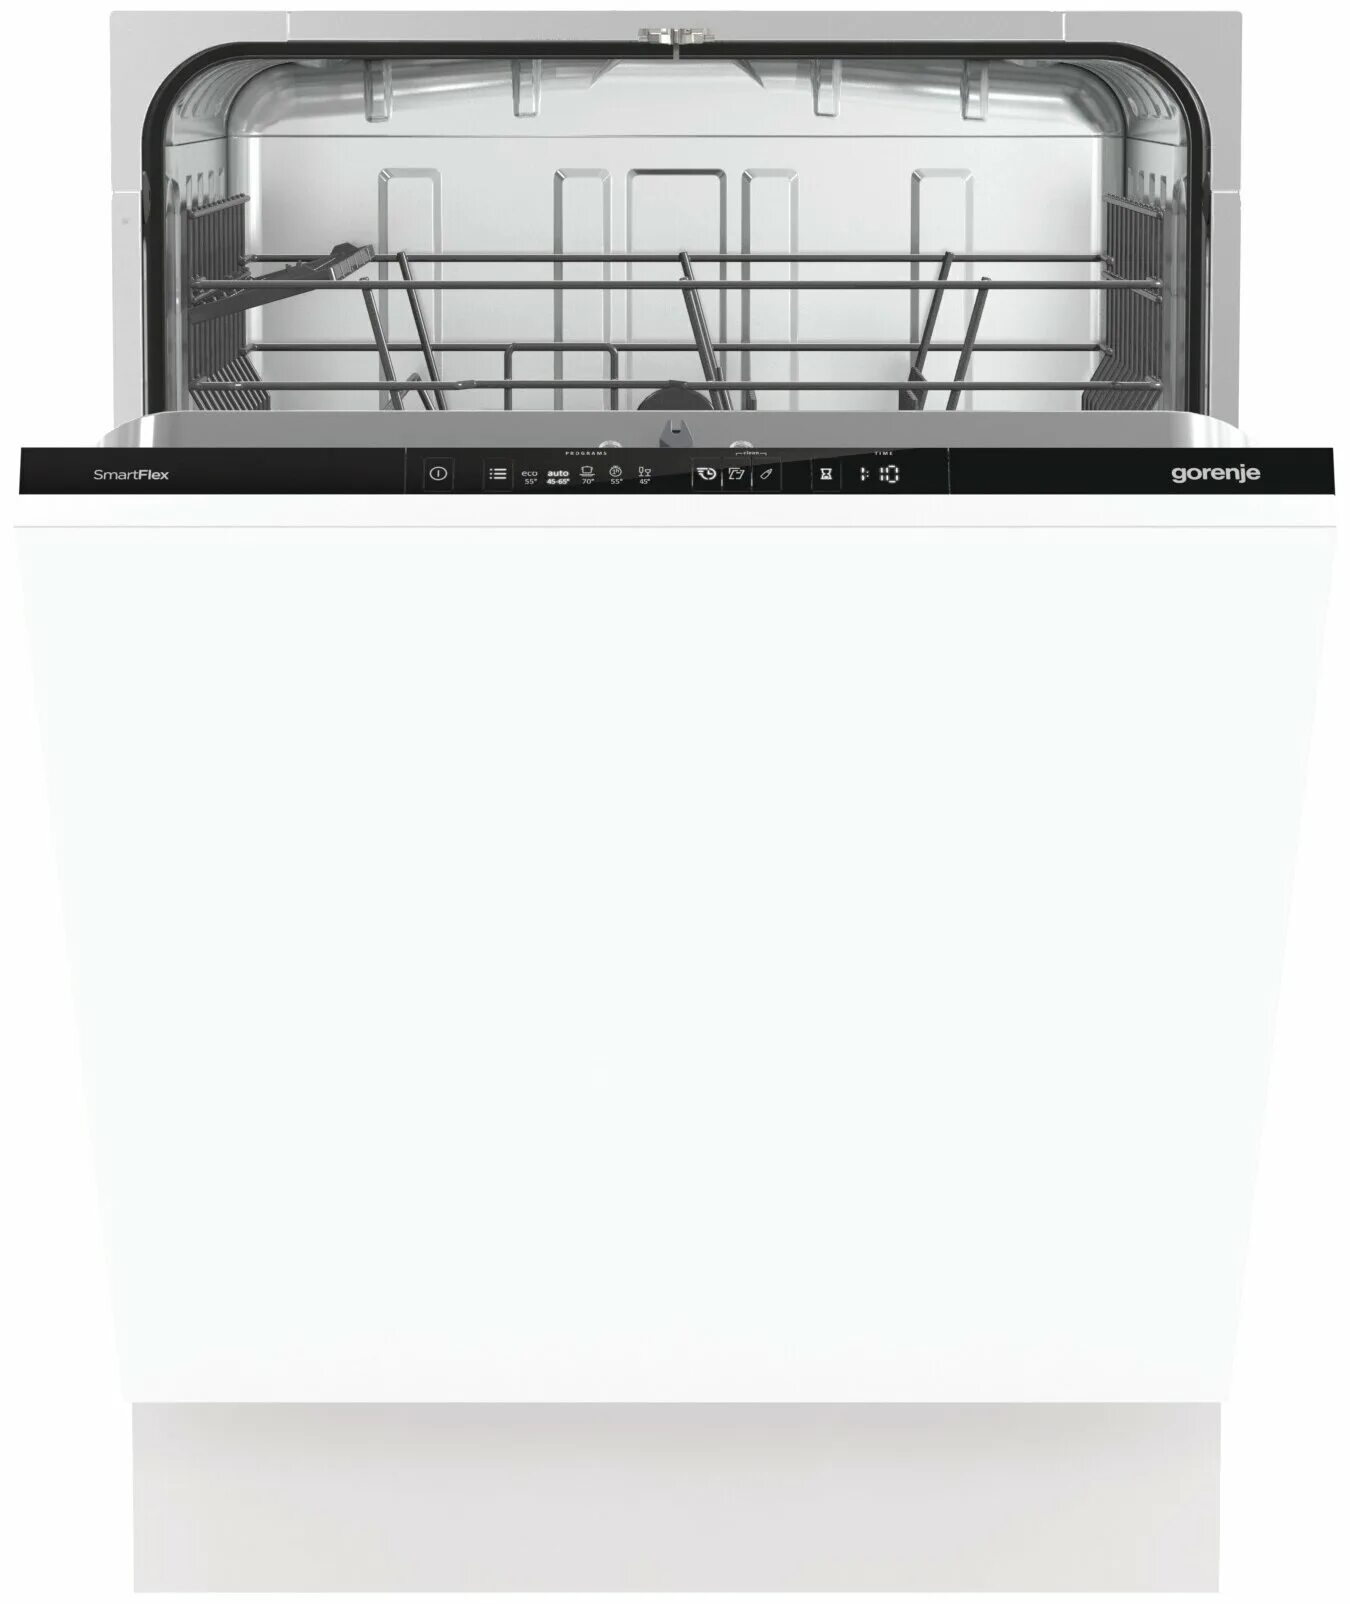 Посудомоечная машина Gorenje gv672c62. Встраиваемая посудомоечная машина 60 см Gorenje gv661d60. Машина посудомоечная Gorenje GV 661d60. Gorenje gv620e10. Посудомоечная горение отзывы